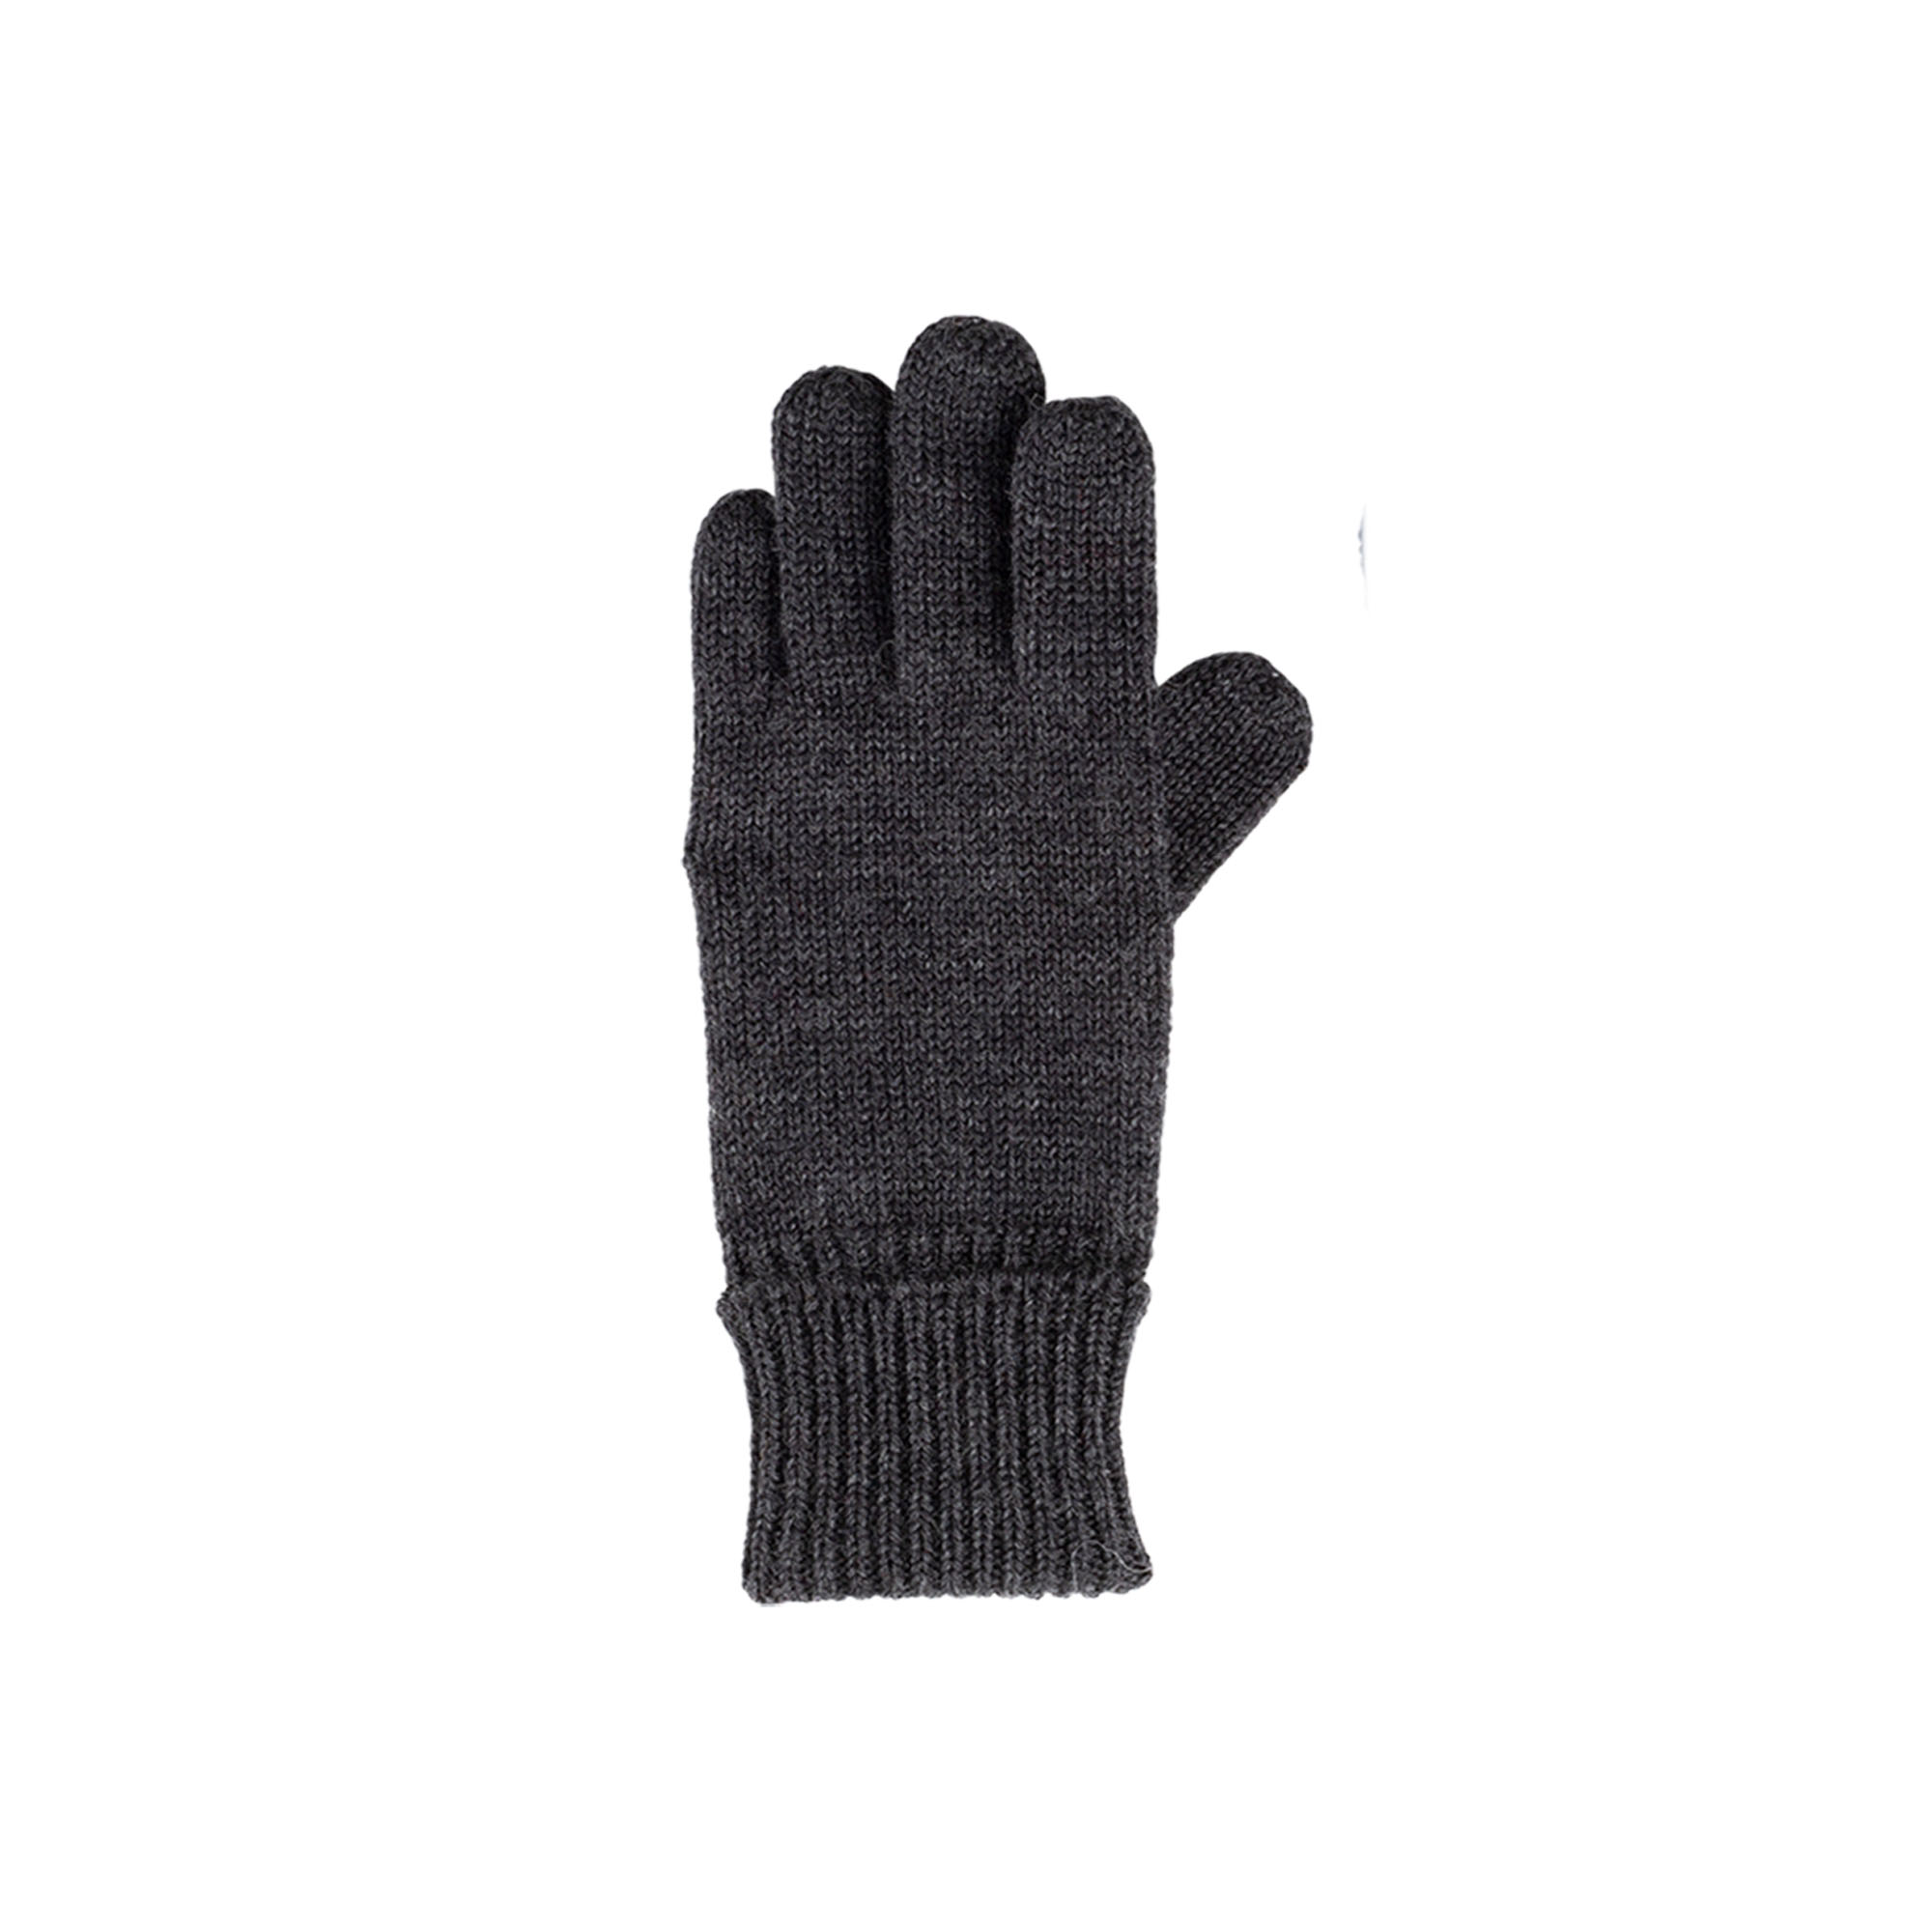 Handschuhe Merino anthrazit